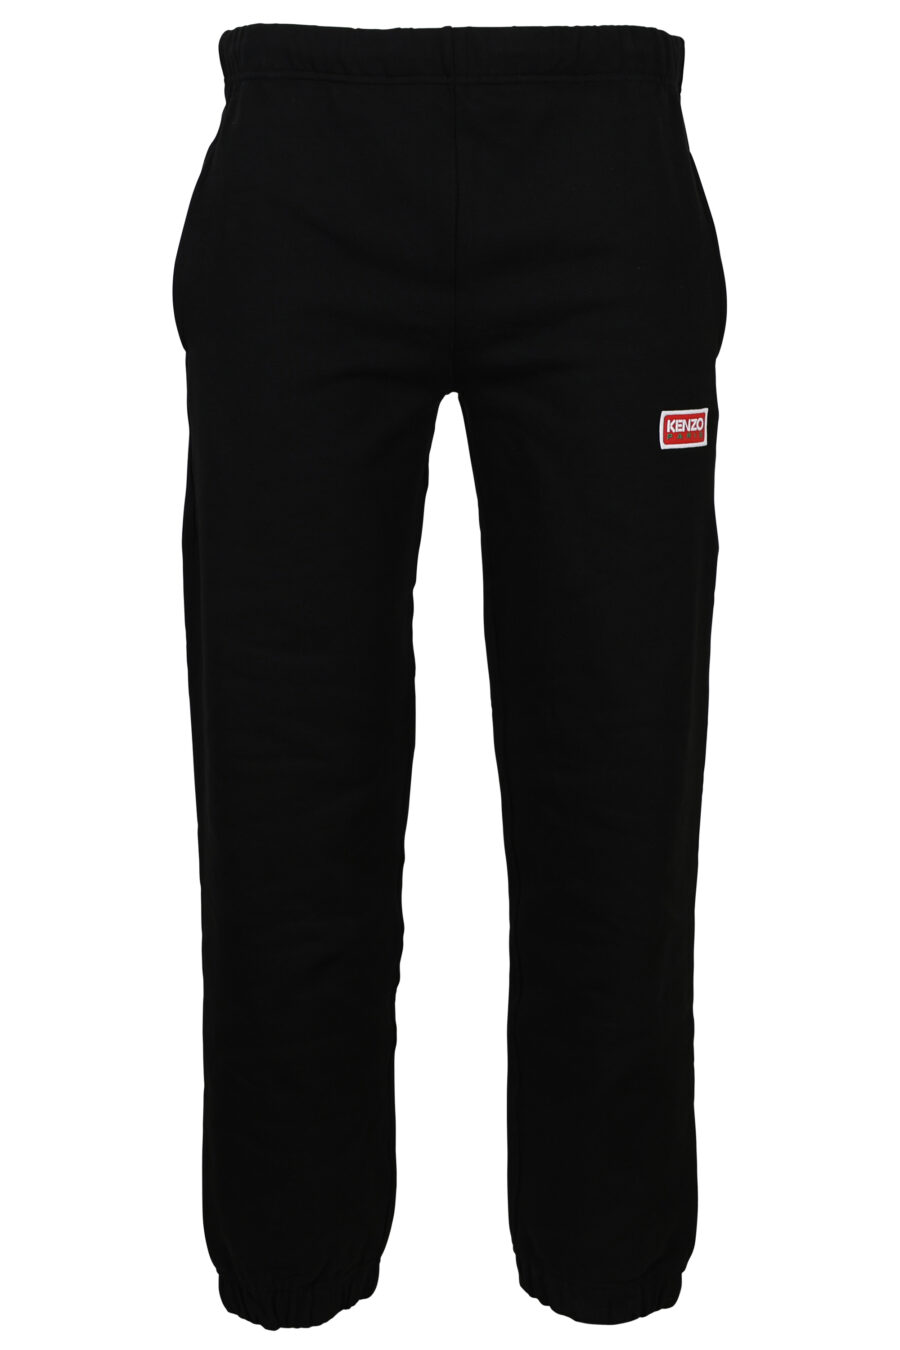 Kenzo - Pantalón de chándal negro con logo pequeño kenzo paris - BLS  Fashion